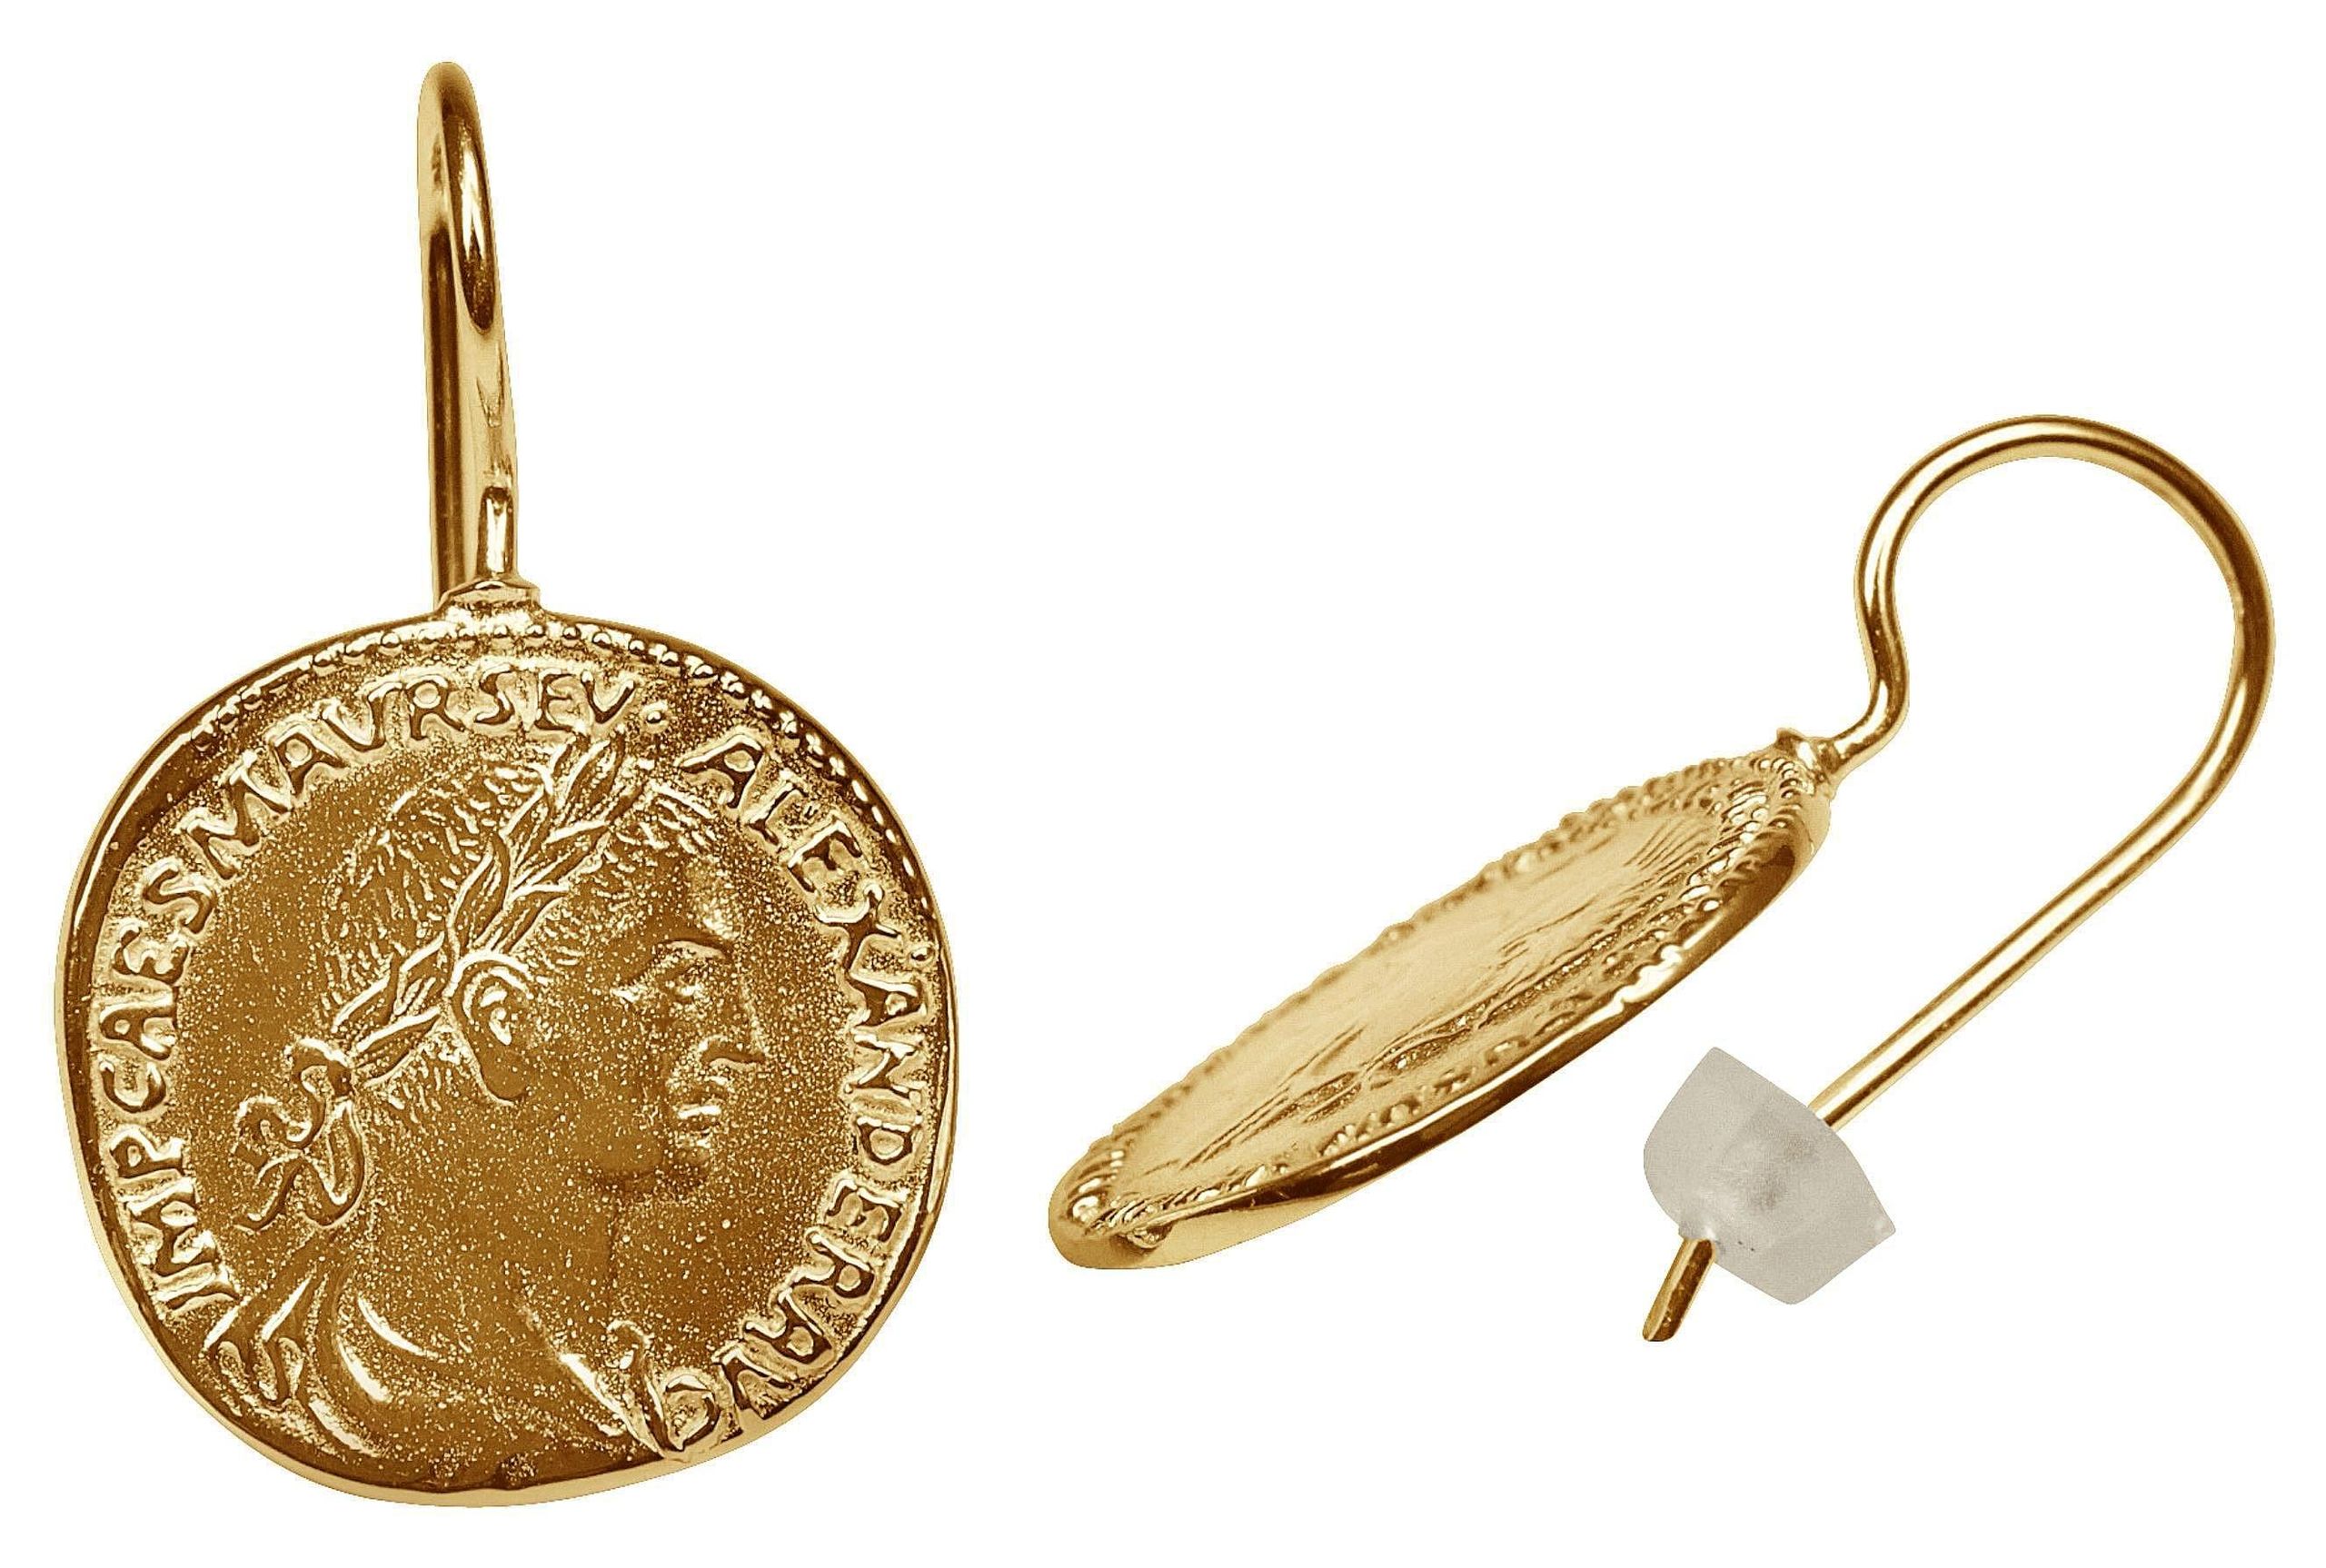 Vergoldete Ohrhänger "Römische Münzen"